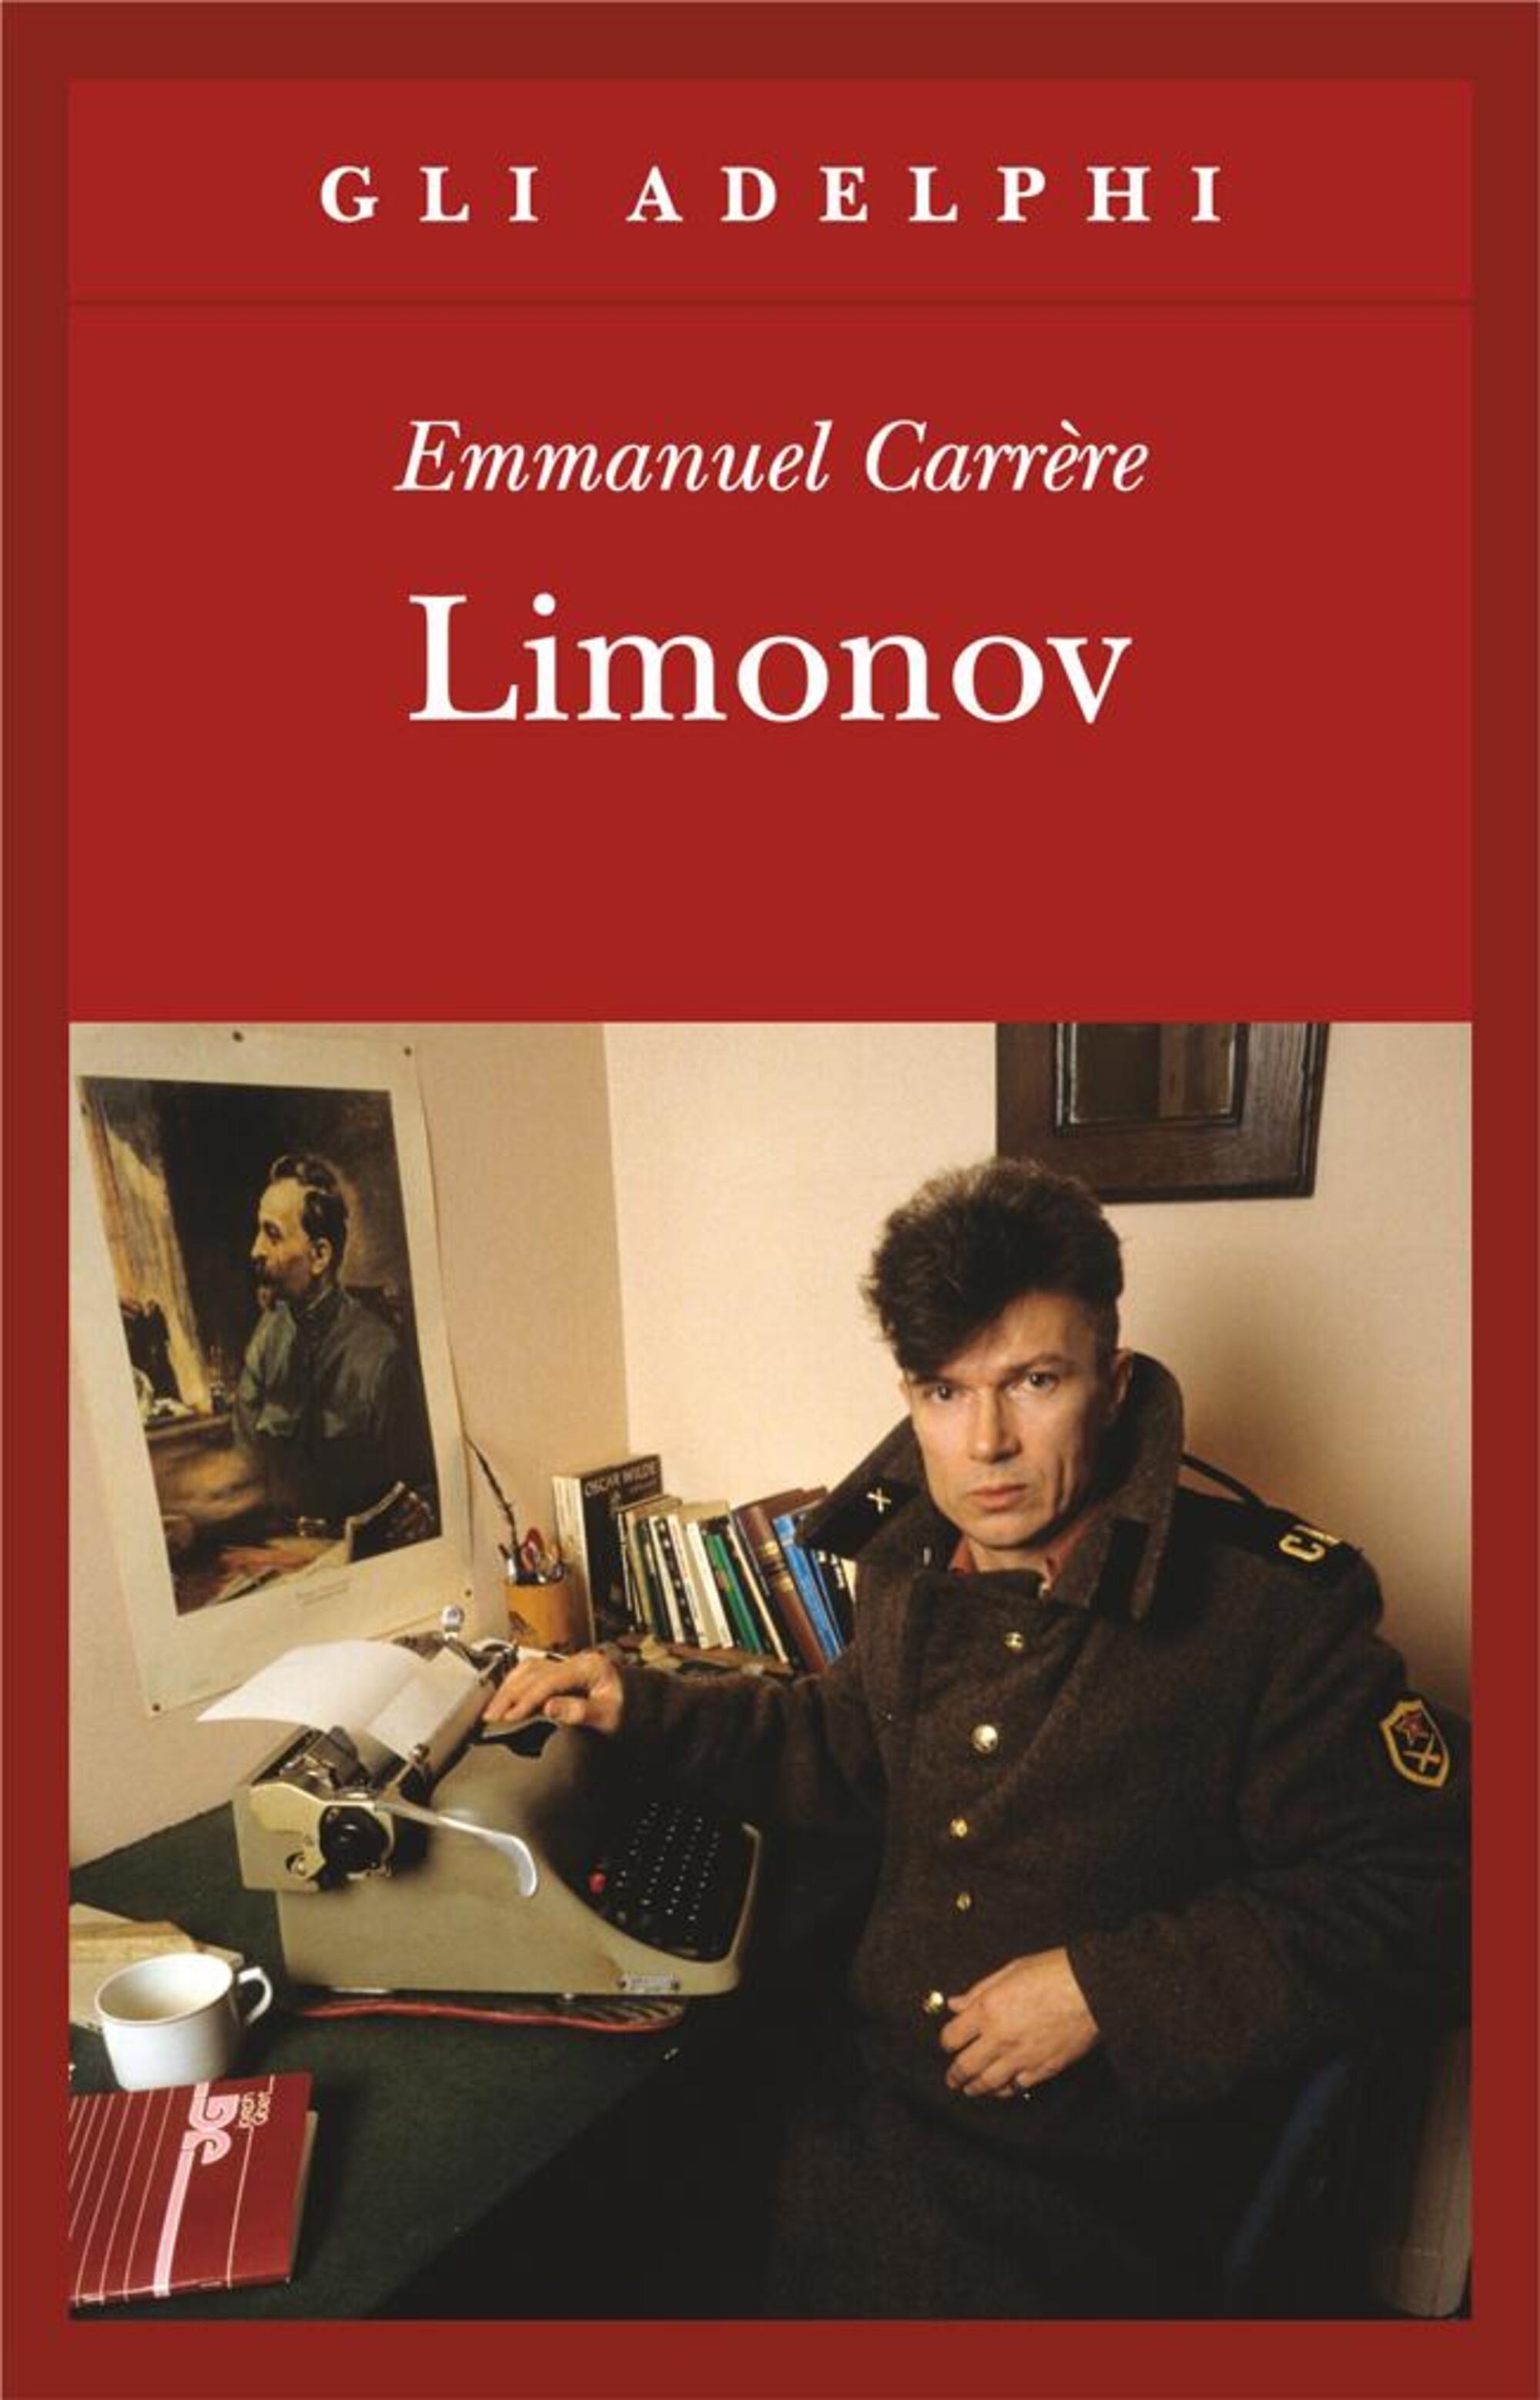 Il libro &ldquo;Limonov&rdquo; di Emmanuel Carr&egrave;re (pubblicato in Italia da Adelphi)